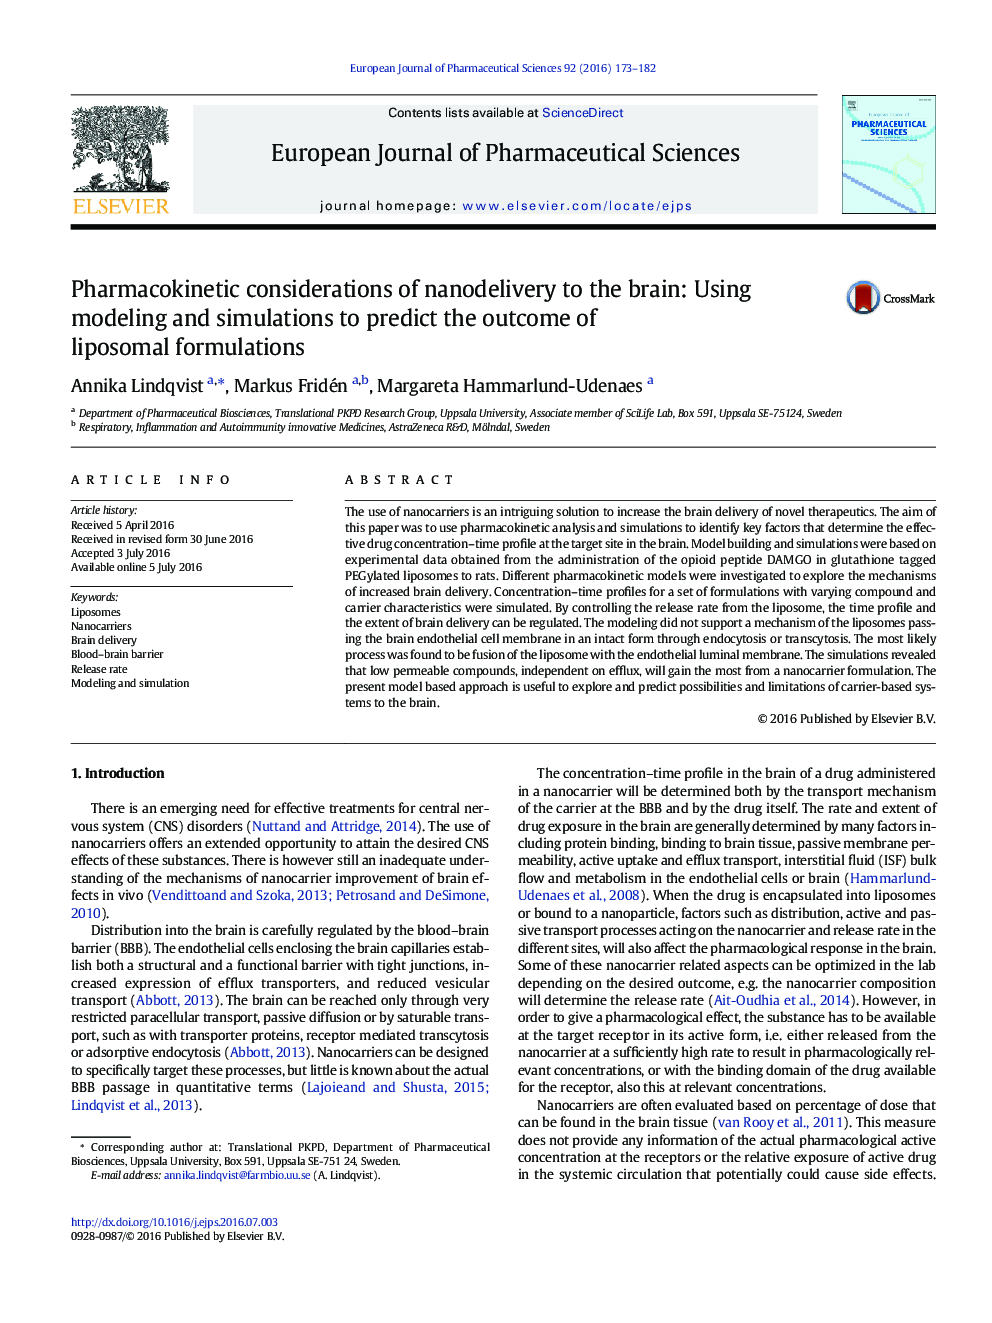 ملاحظات فارماکوکینتیک ارائه نانوکامپوزیت به مغز: با استفاده از مدل سازی و شبیه سازی برای پیش بینی نتایج فرمولاسیون های لیپوزومی 